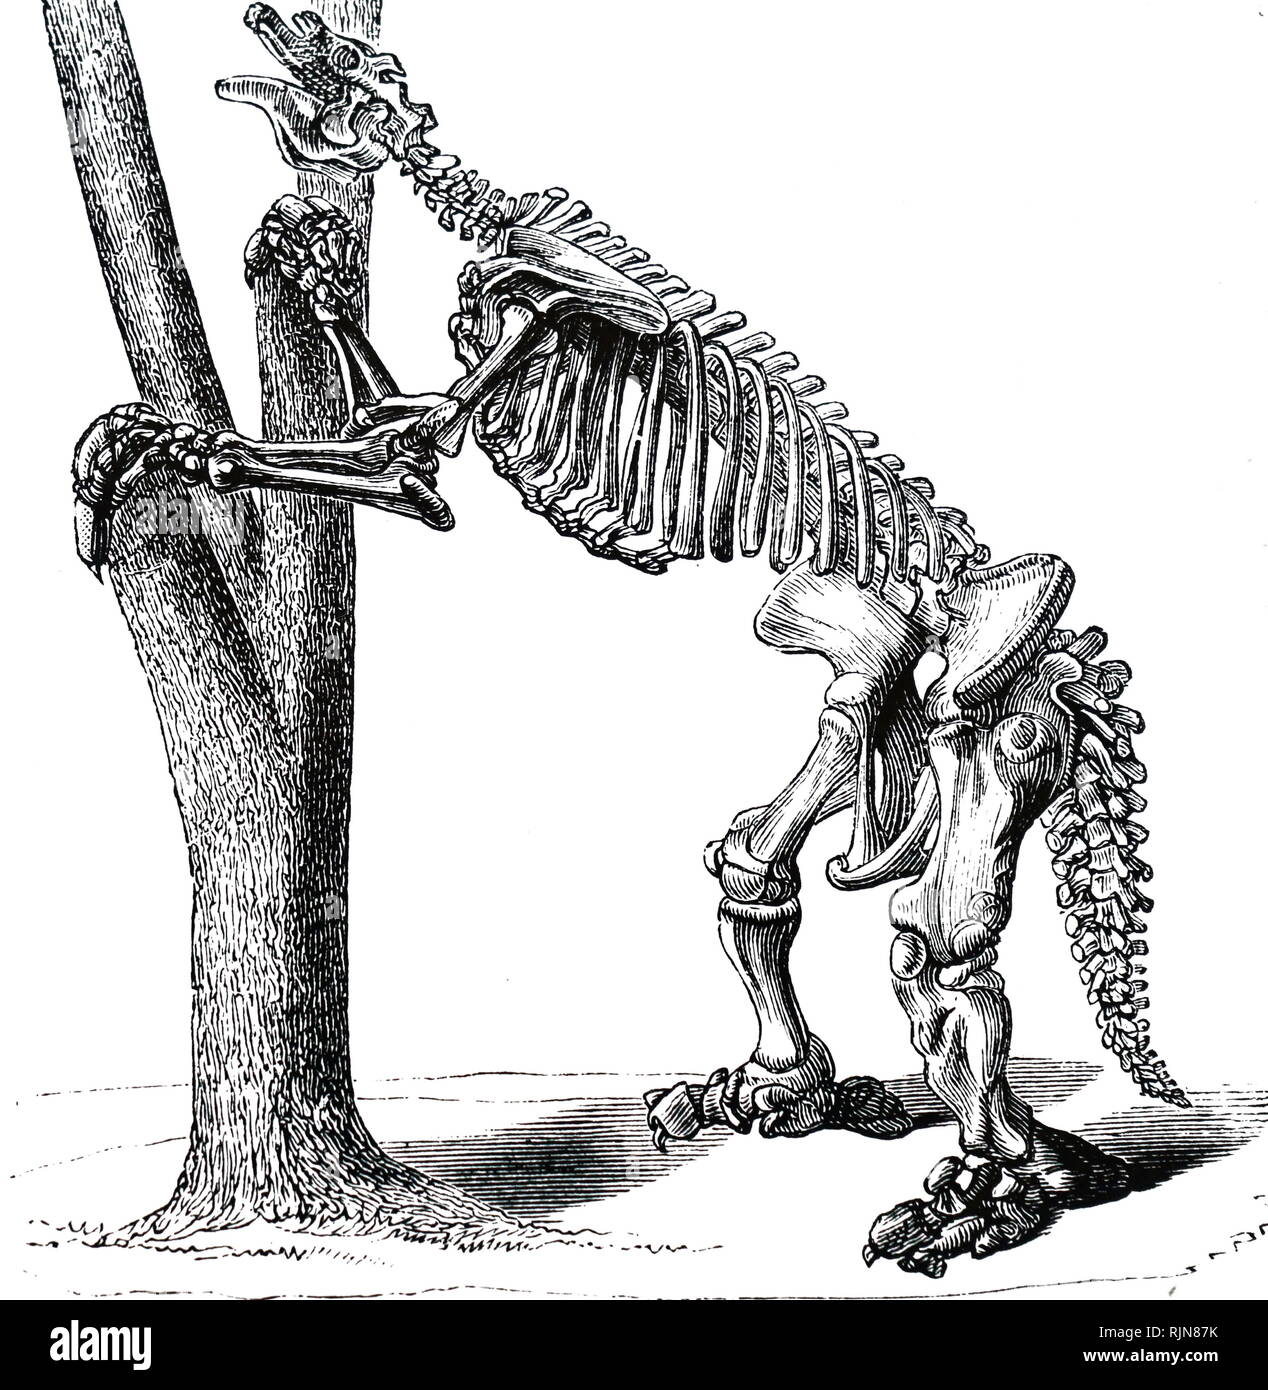 Eine Gravur, die das Skelett einer Megatherium (giant Ground Sloth) hauptsächlich Südamerikanischen Säugetiere von der Größe eines Elefanten - Obere pliozäne und pleistozäne Perioden. Vom 19. Jahrhundert Stockfoto